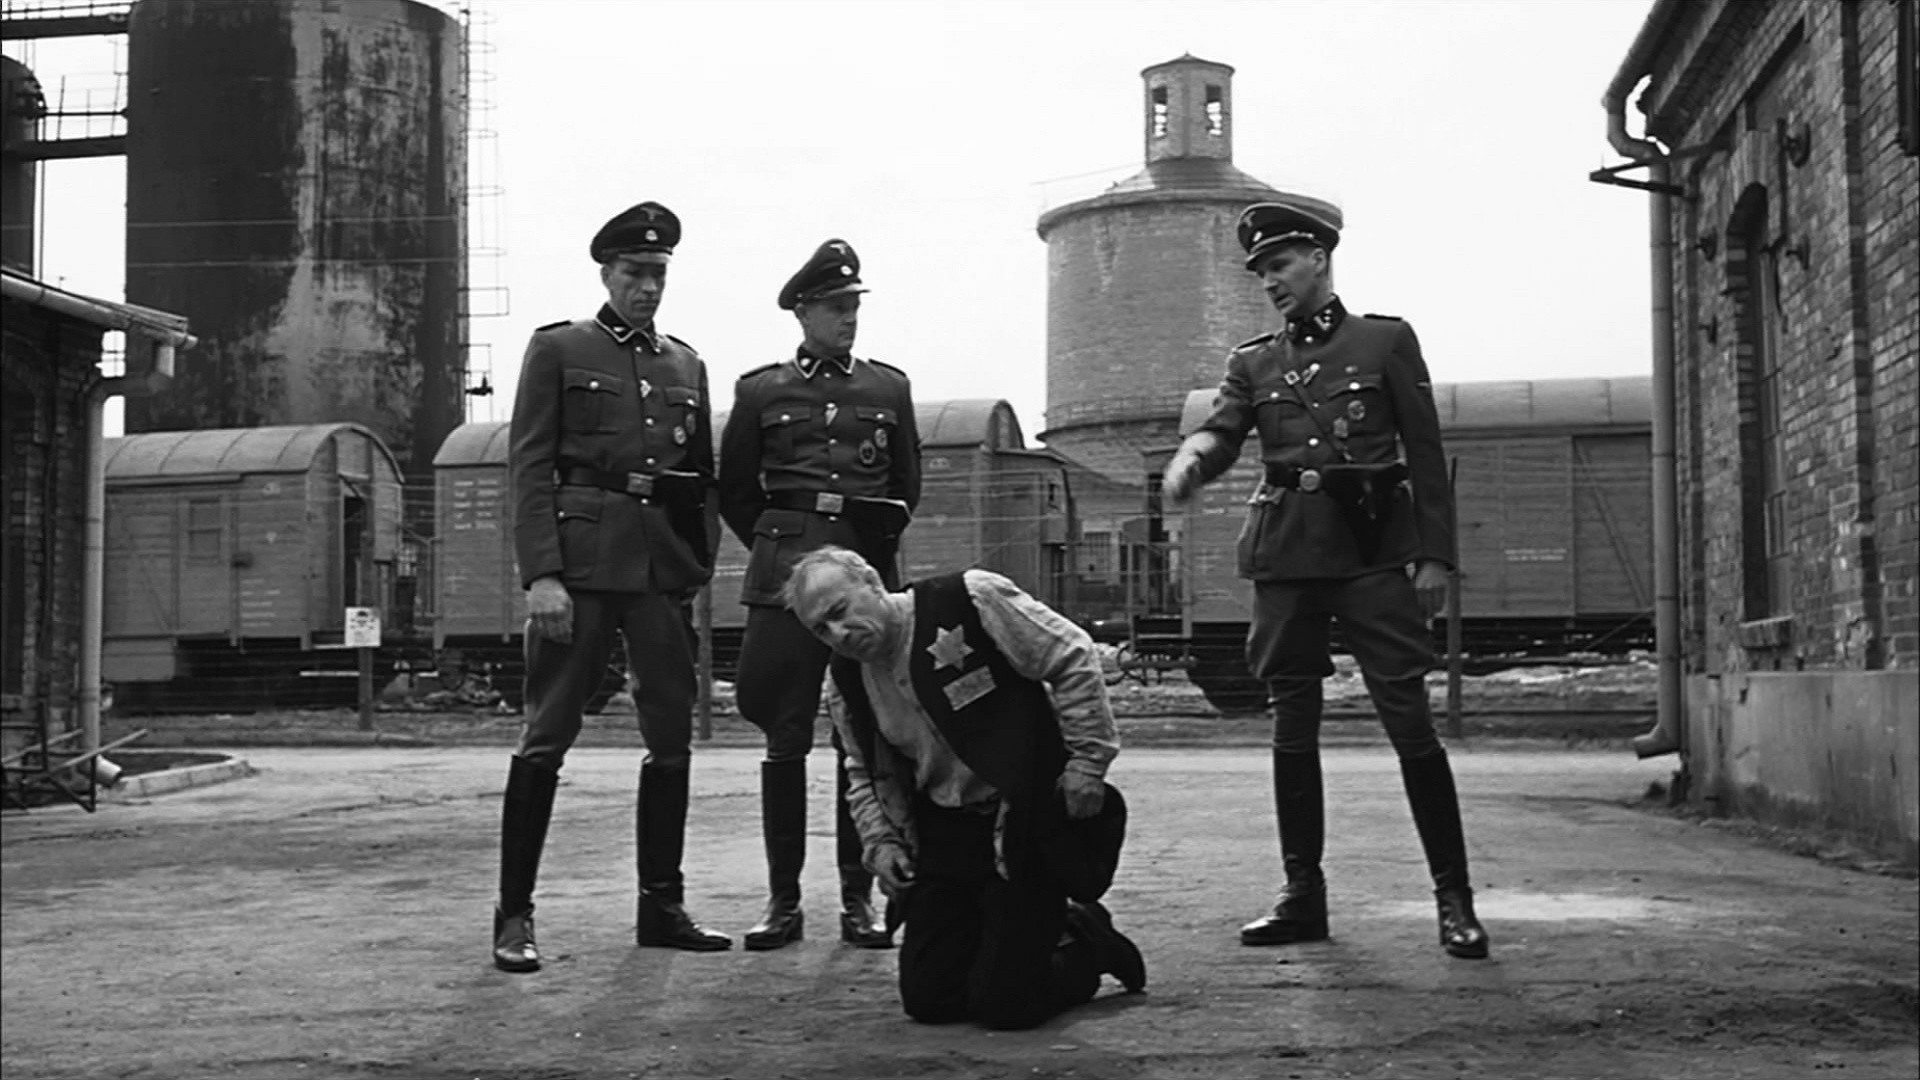 Kameraarbeit: Auf dem Bild sind drei SS Soldaten zu sehen, die um einen knieenden Mann stehen. Im Hintergrund ist ein Fabrikgebäude zu sehen. Davor ist ein Zug.